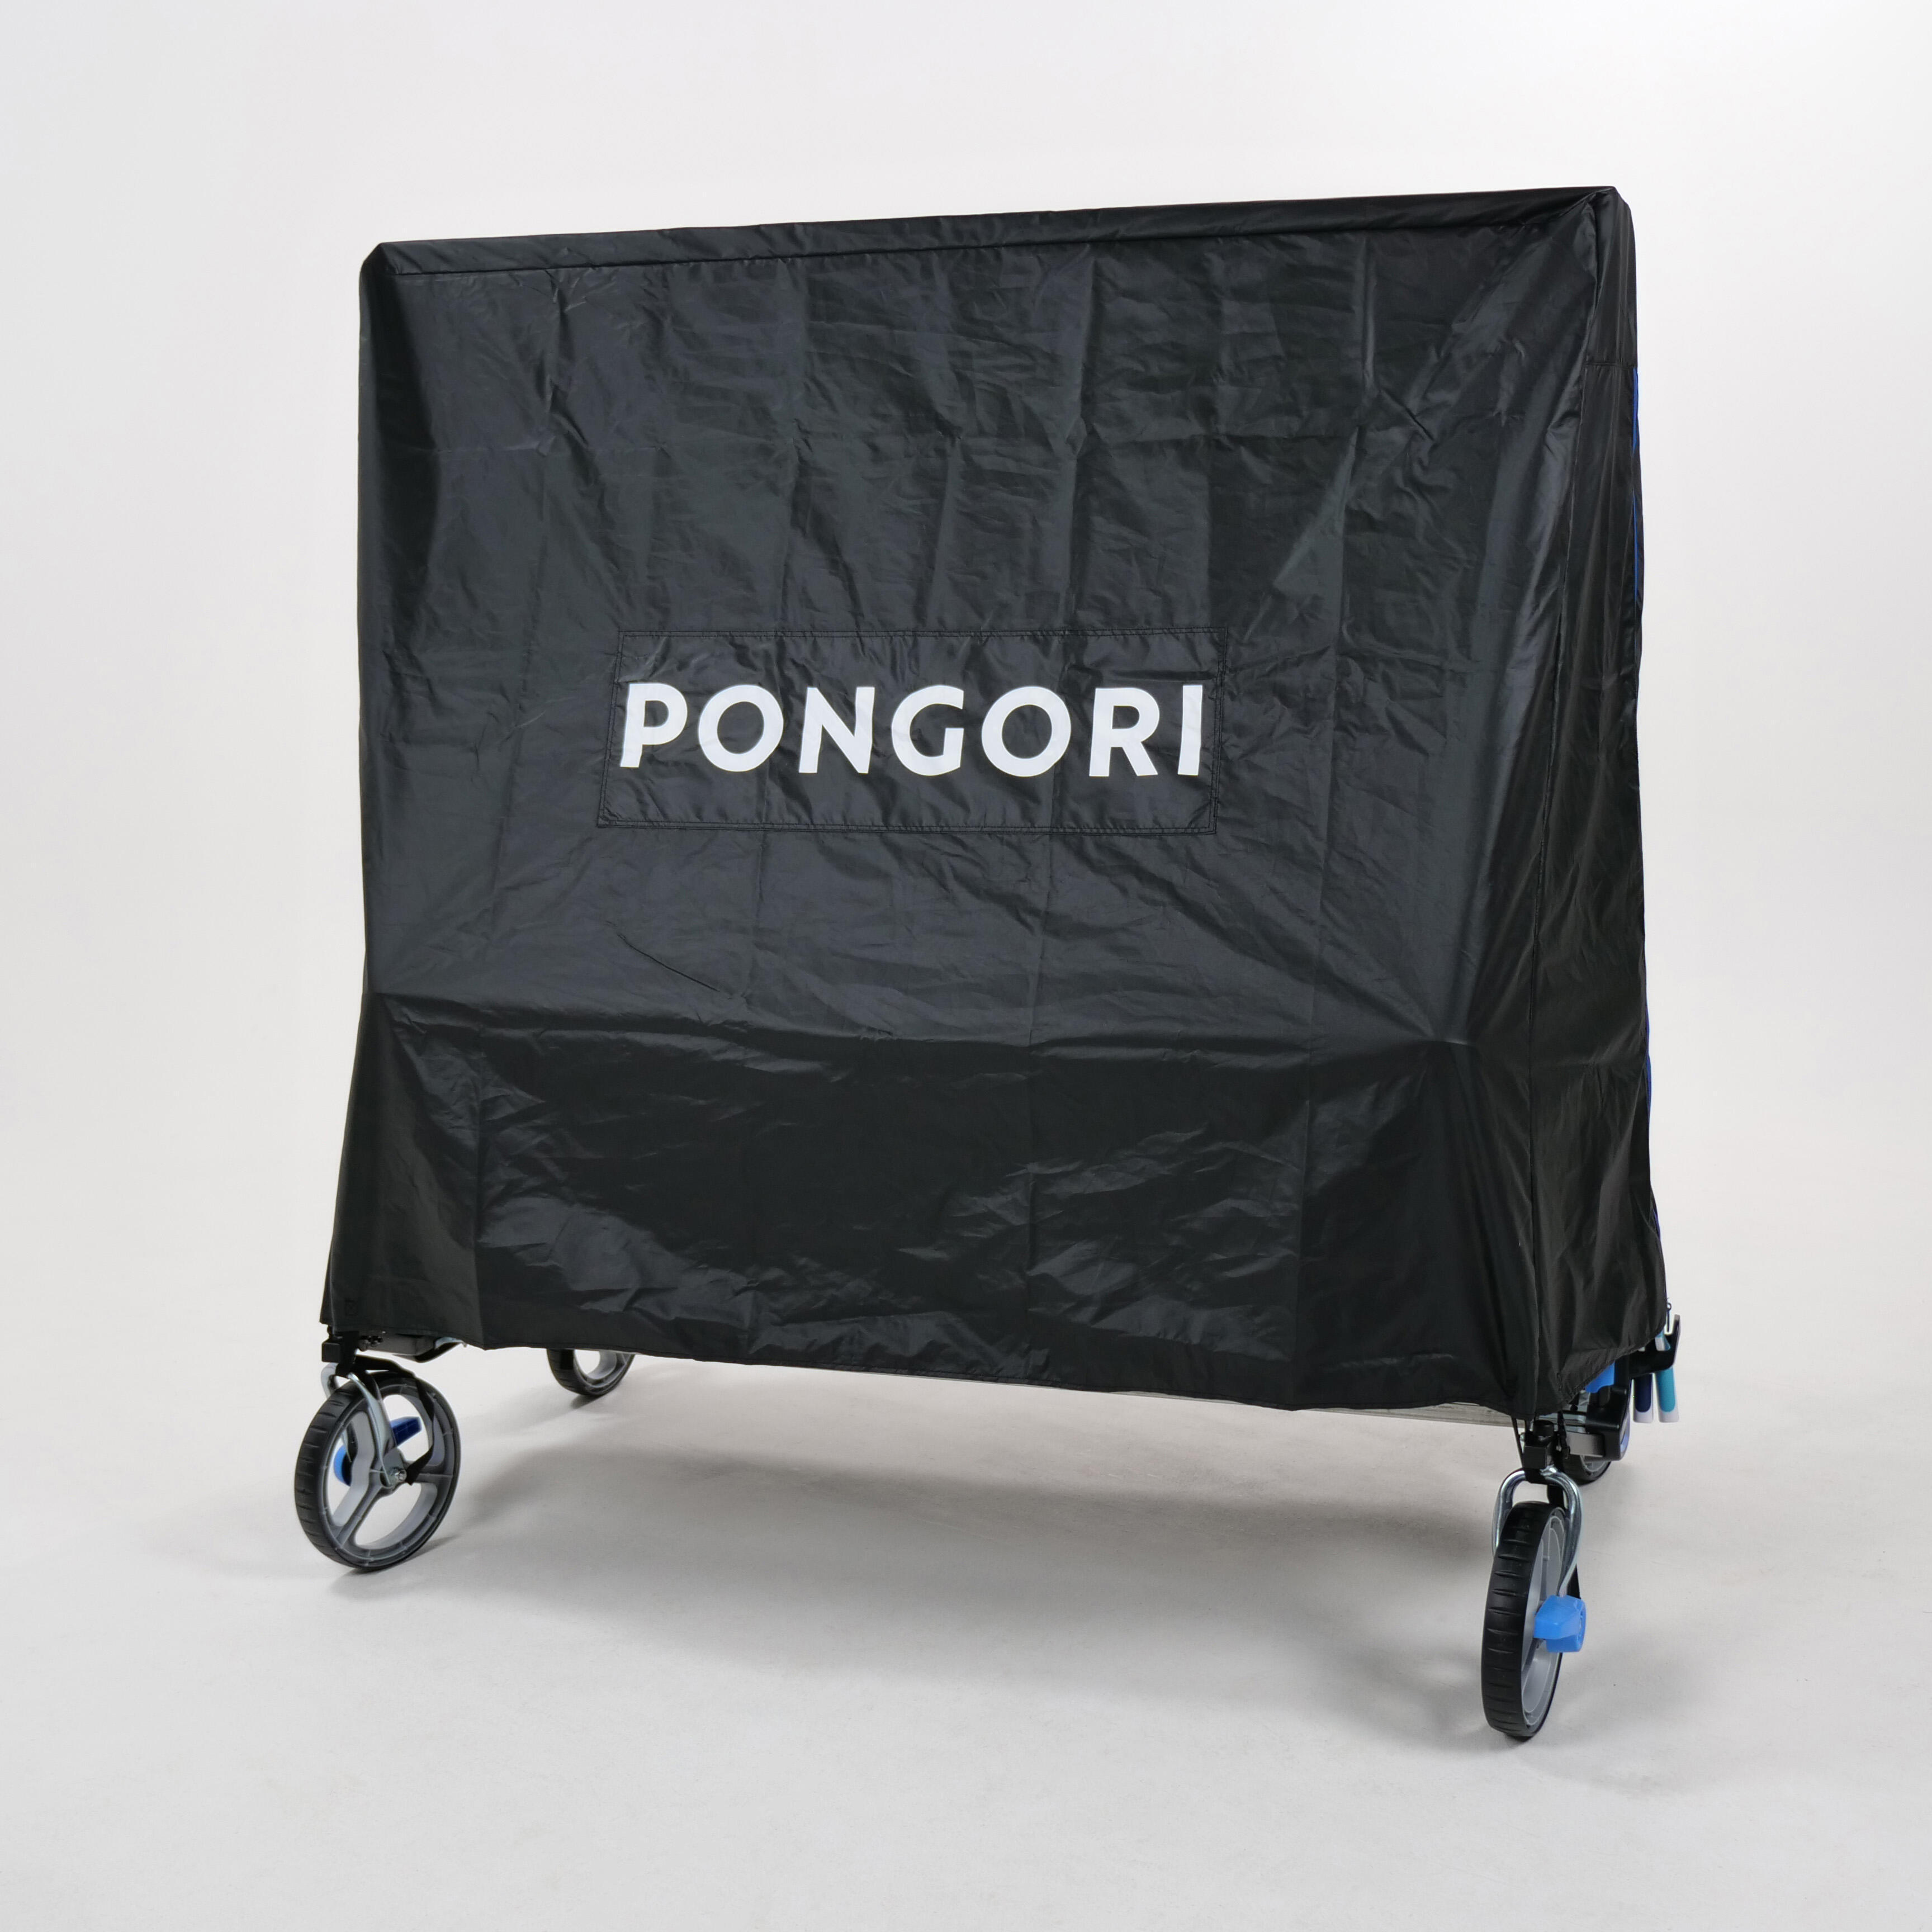 Védőhuzat Pongori PPT 930 Outdoor.2 asztalhoz használat, javítás 